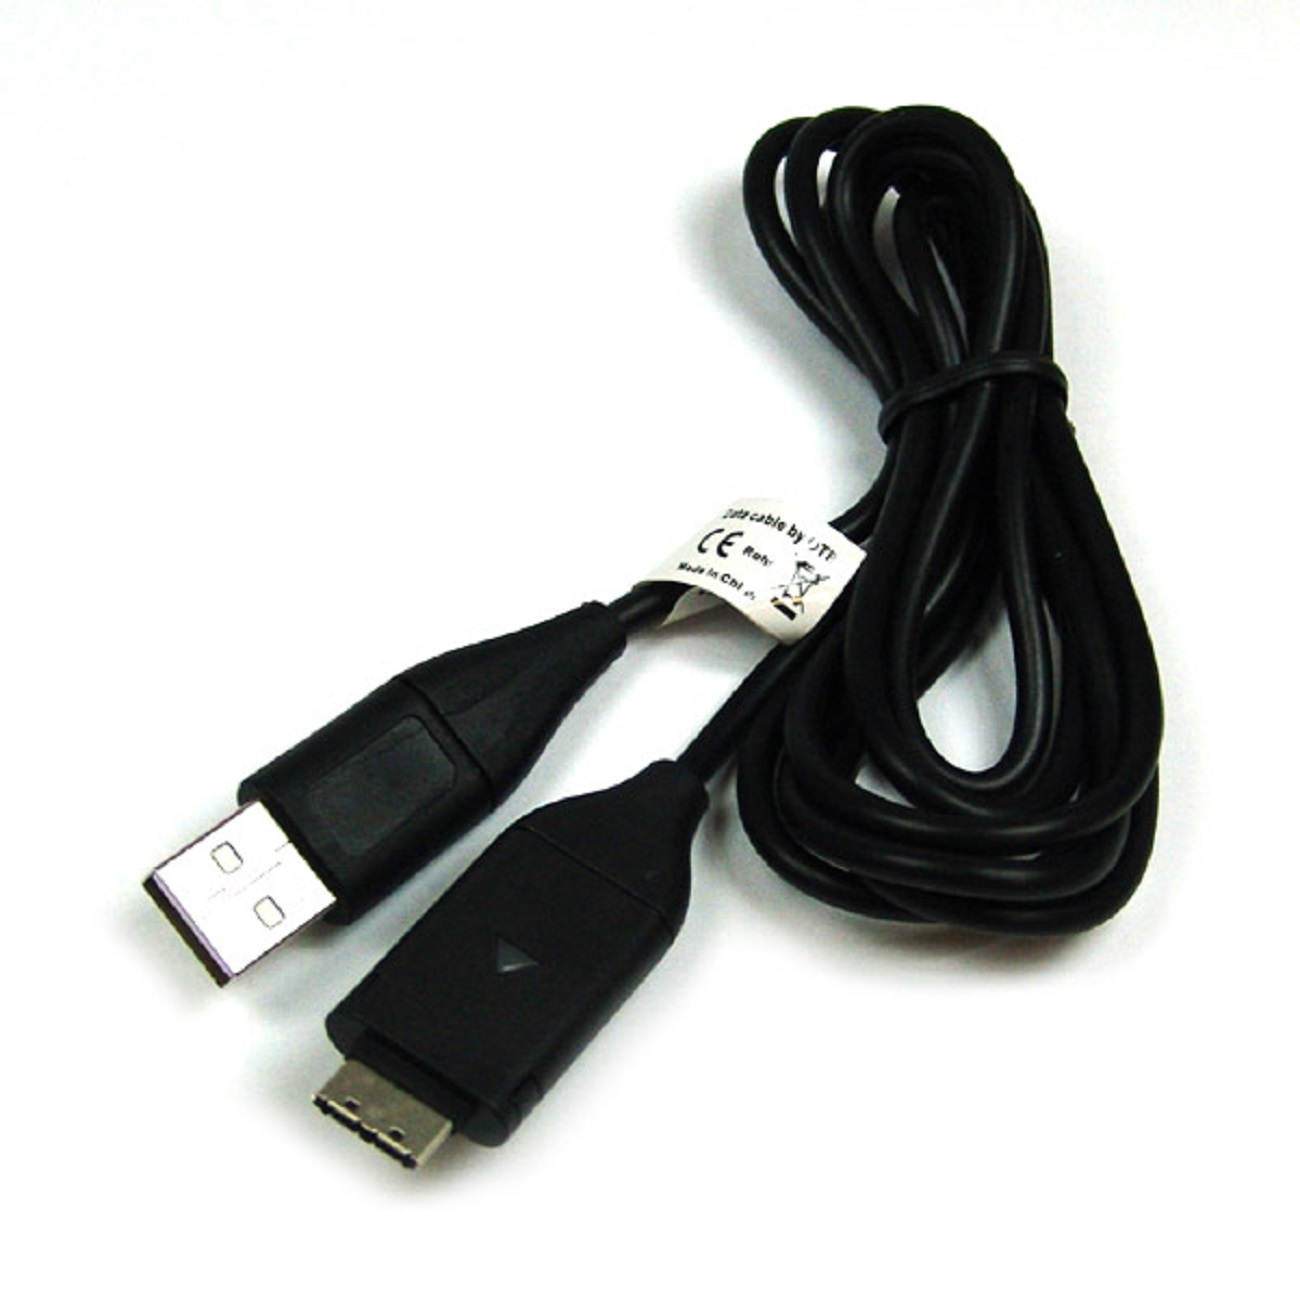 Samsung, MOBILOTEC schwarz kompatibel USB-Ladekabel Samsung mit WB210 Zubehör